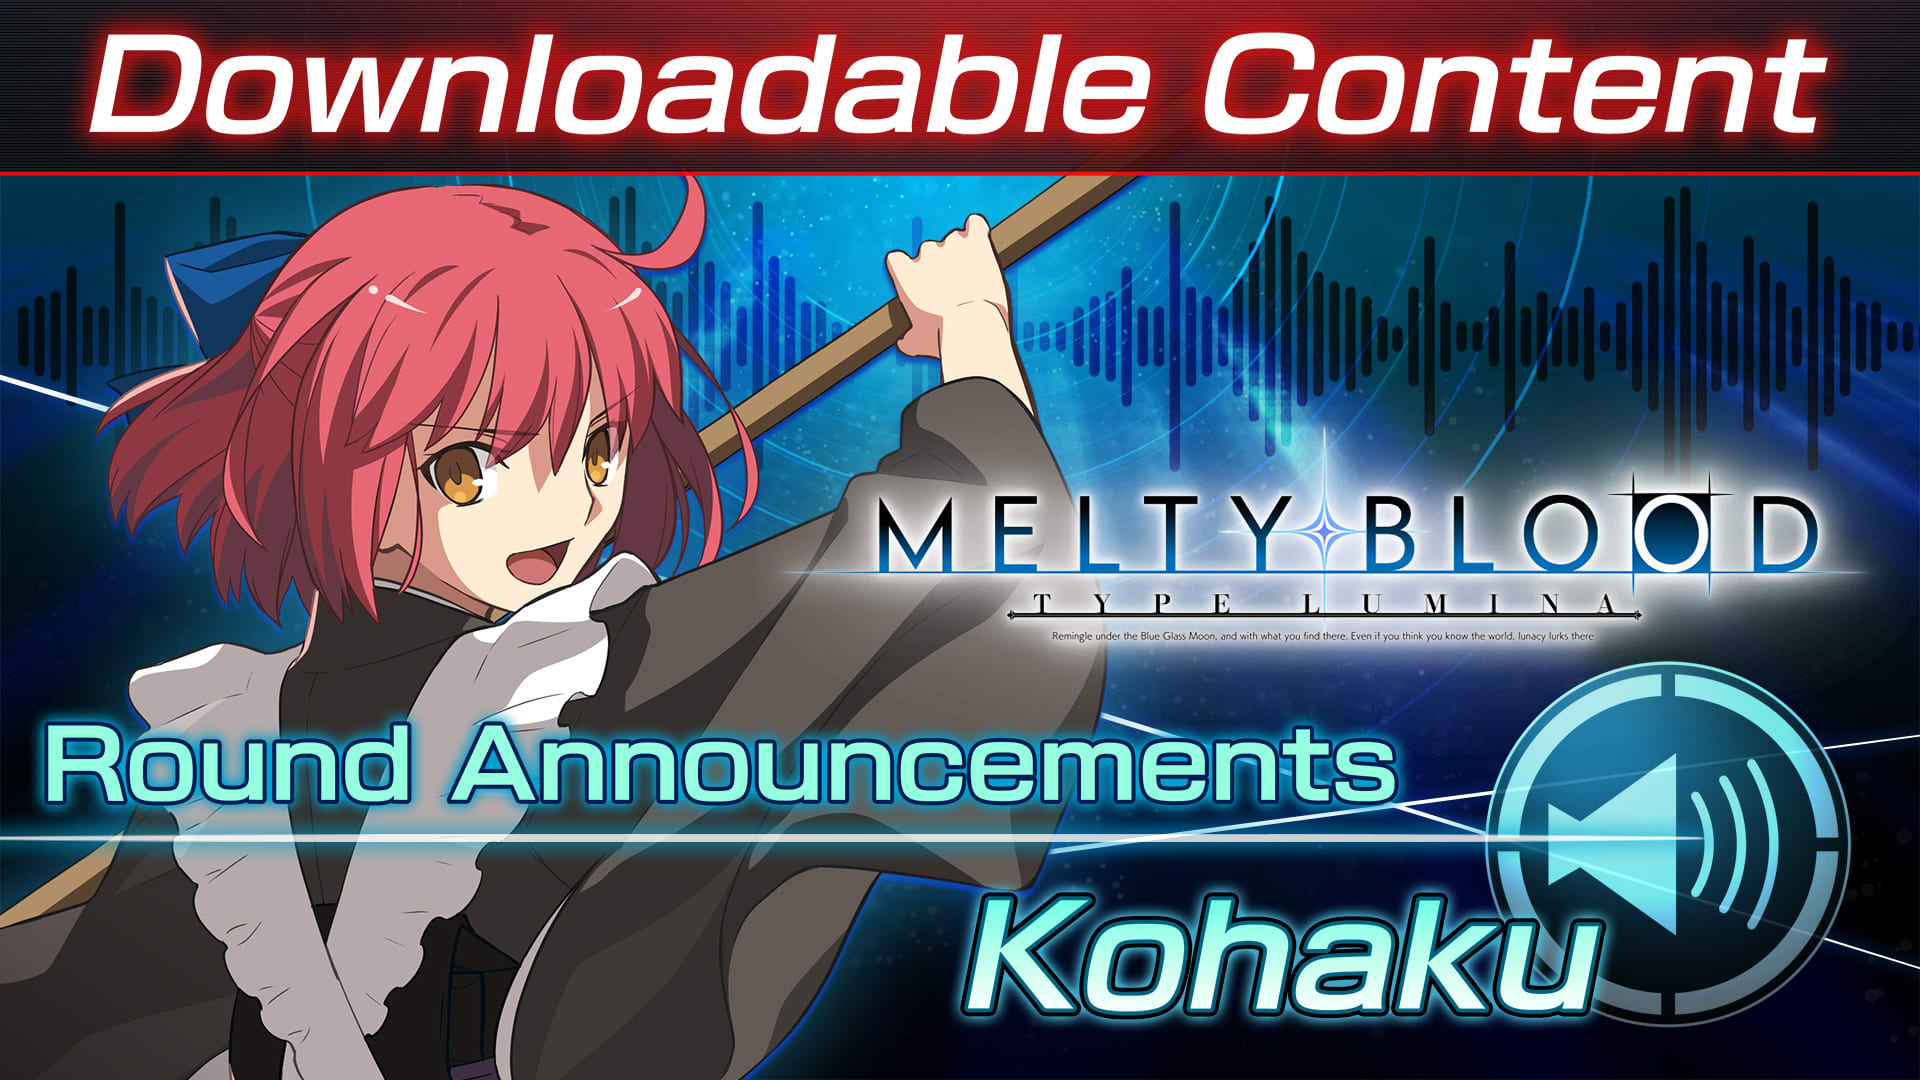 Contenido adicional: "Kohaku Round Announcements"